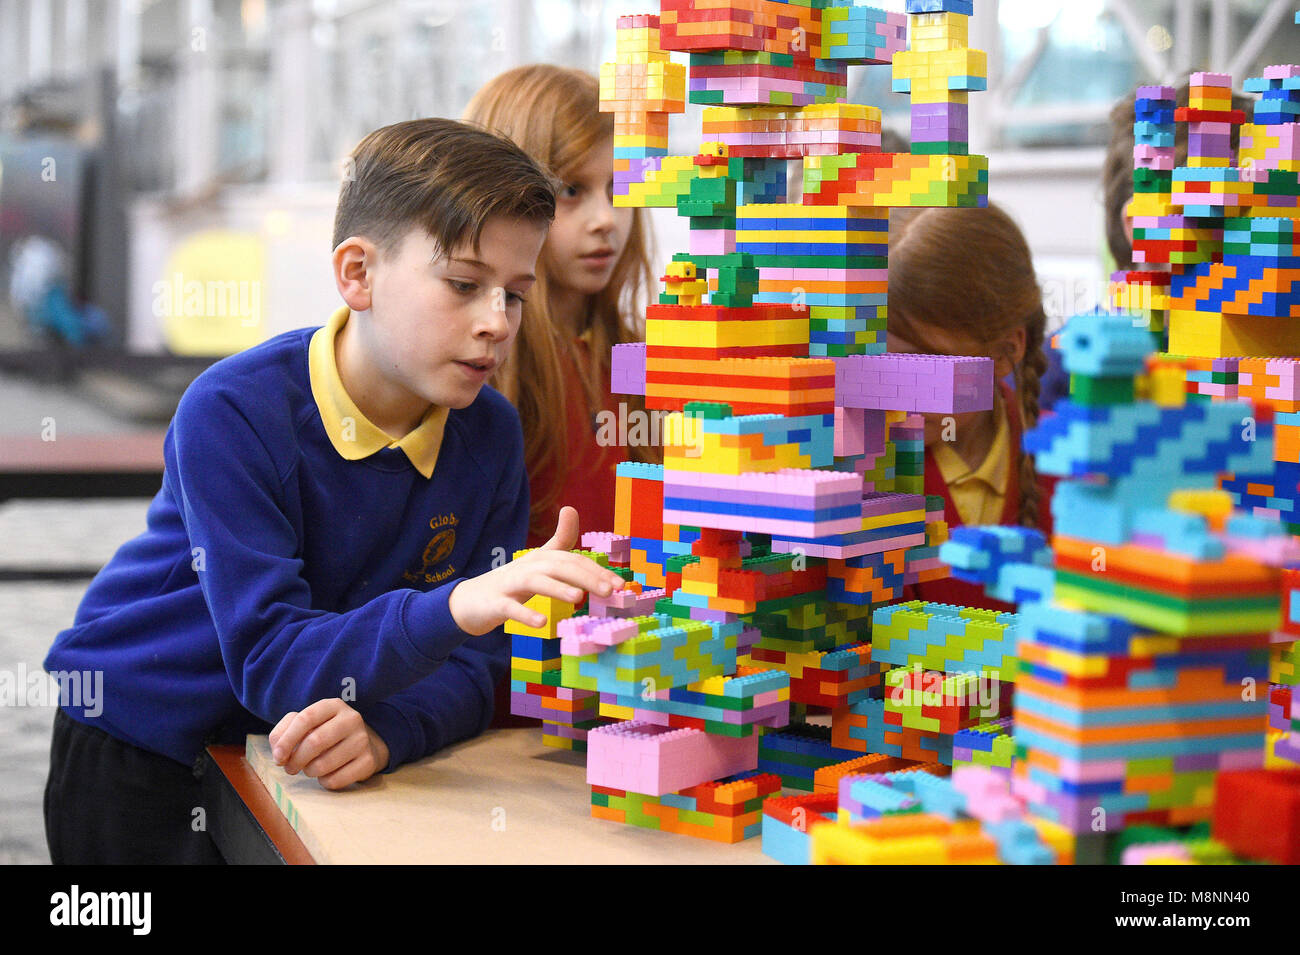 Des élèves de l'école primaire Globe construisent une sculpture Lego au V&A Museum of Childhood de Londres, dans le cadre de l'exposition Nordic Design for Children. Banque D'Images